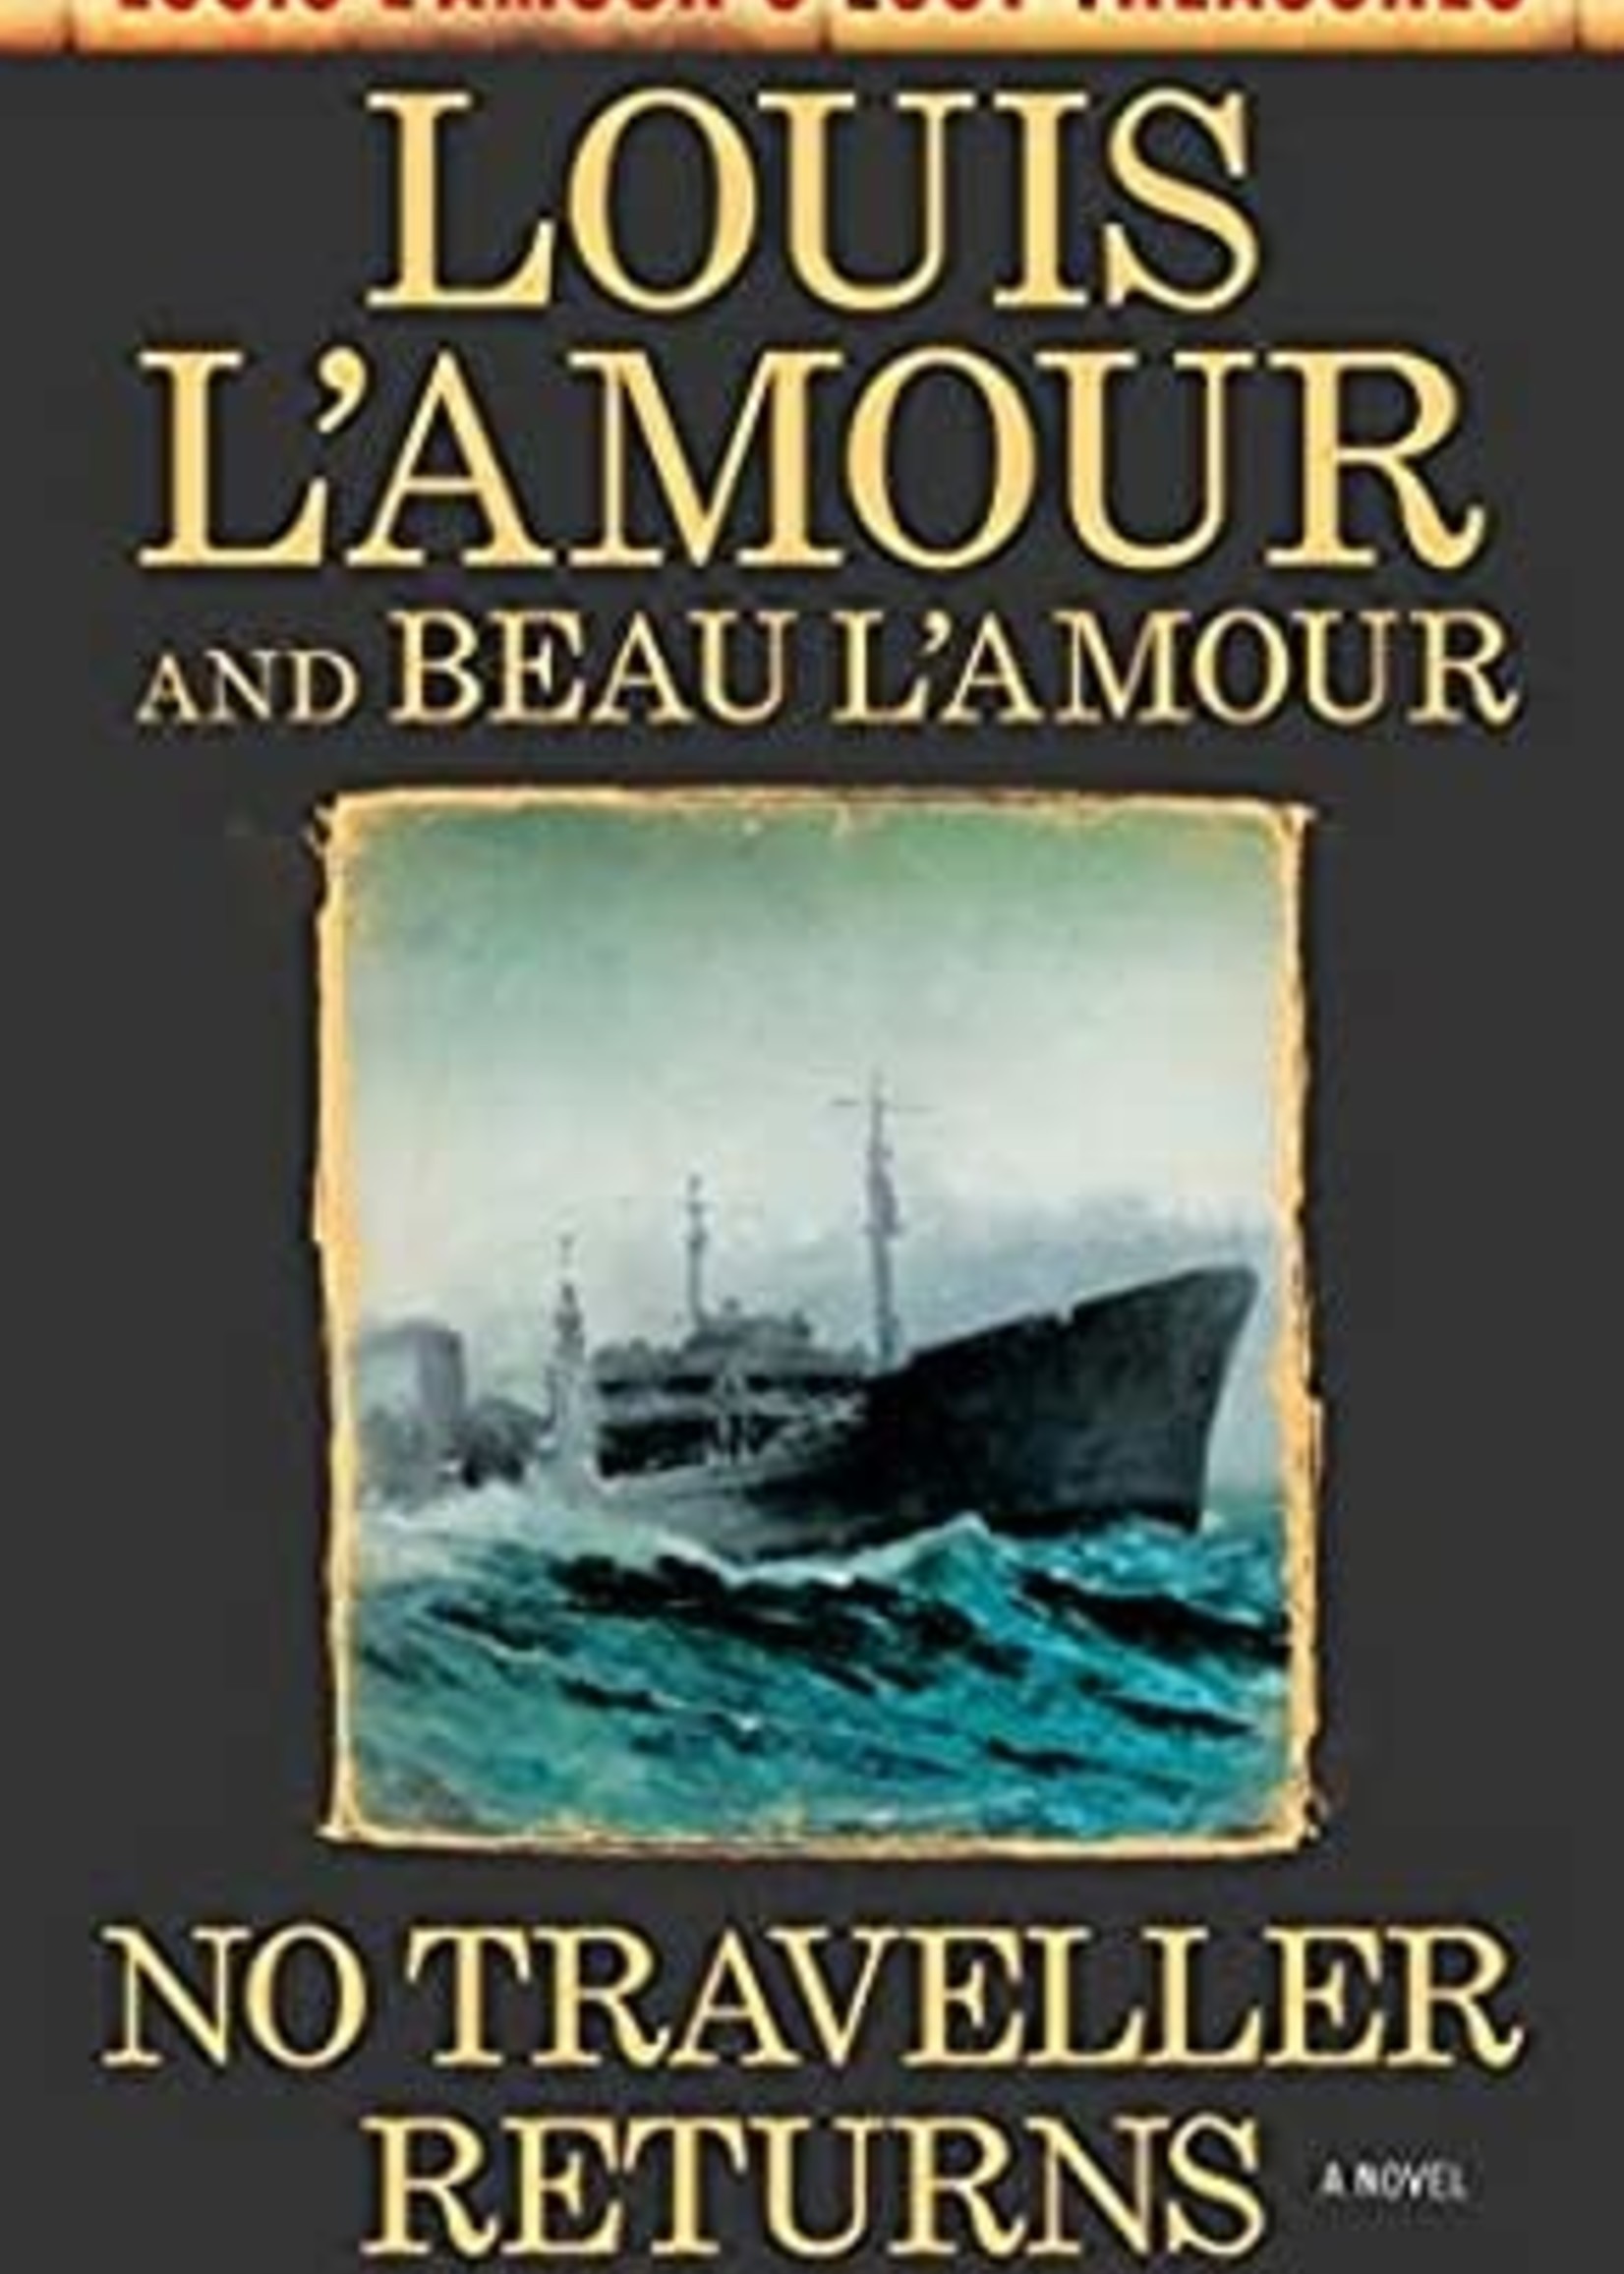 No Traveller Returns (Louis l'Amour's Lost Treasures) by Louis L'Amour, Beau L'Amour